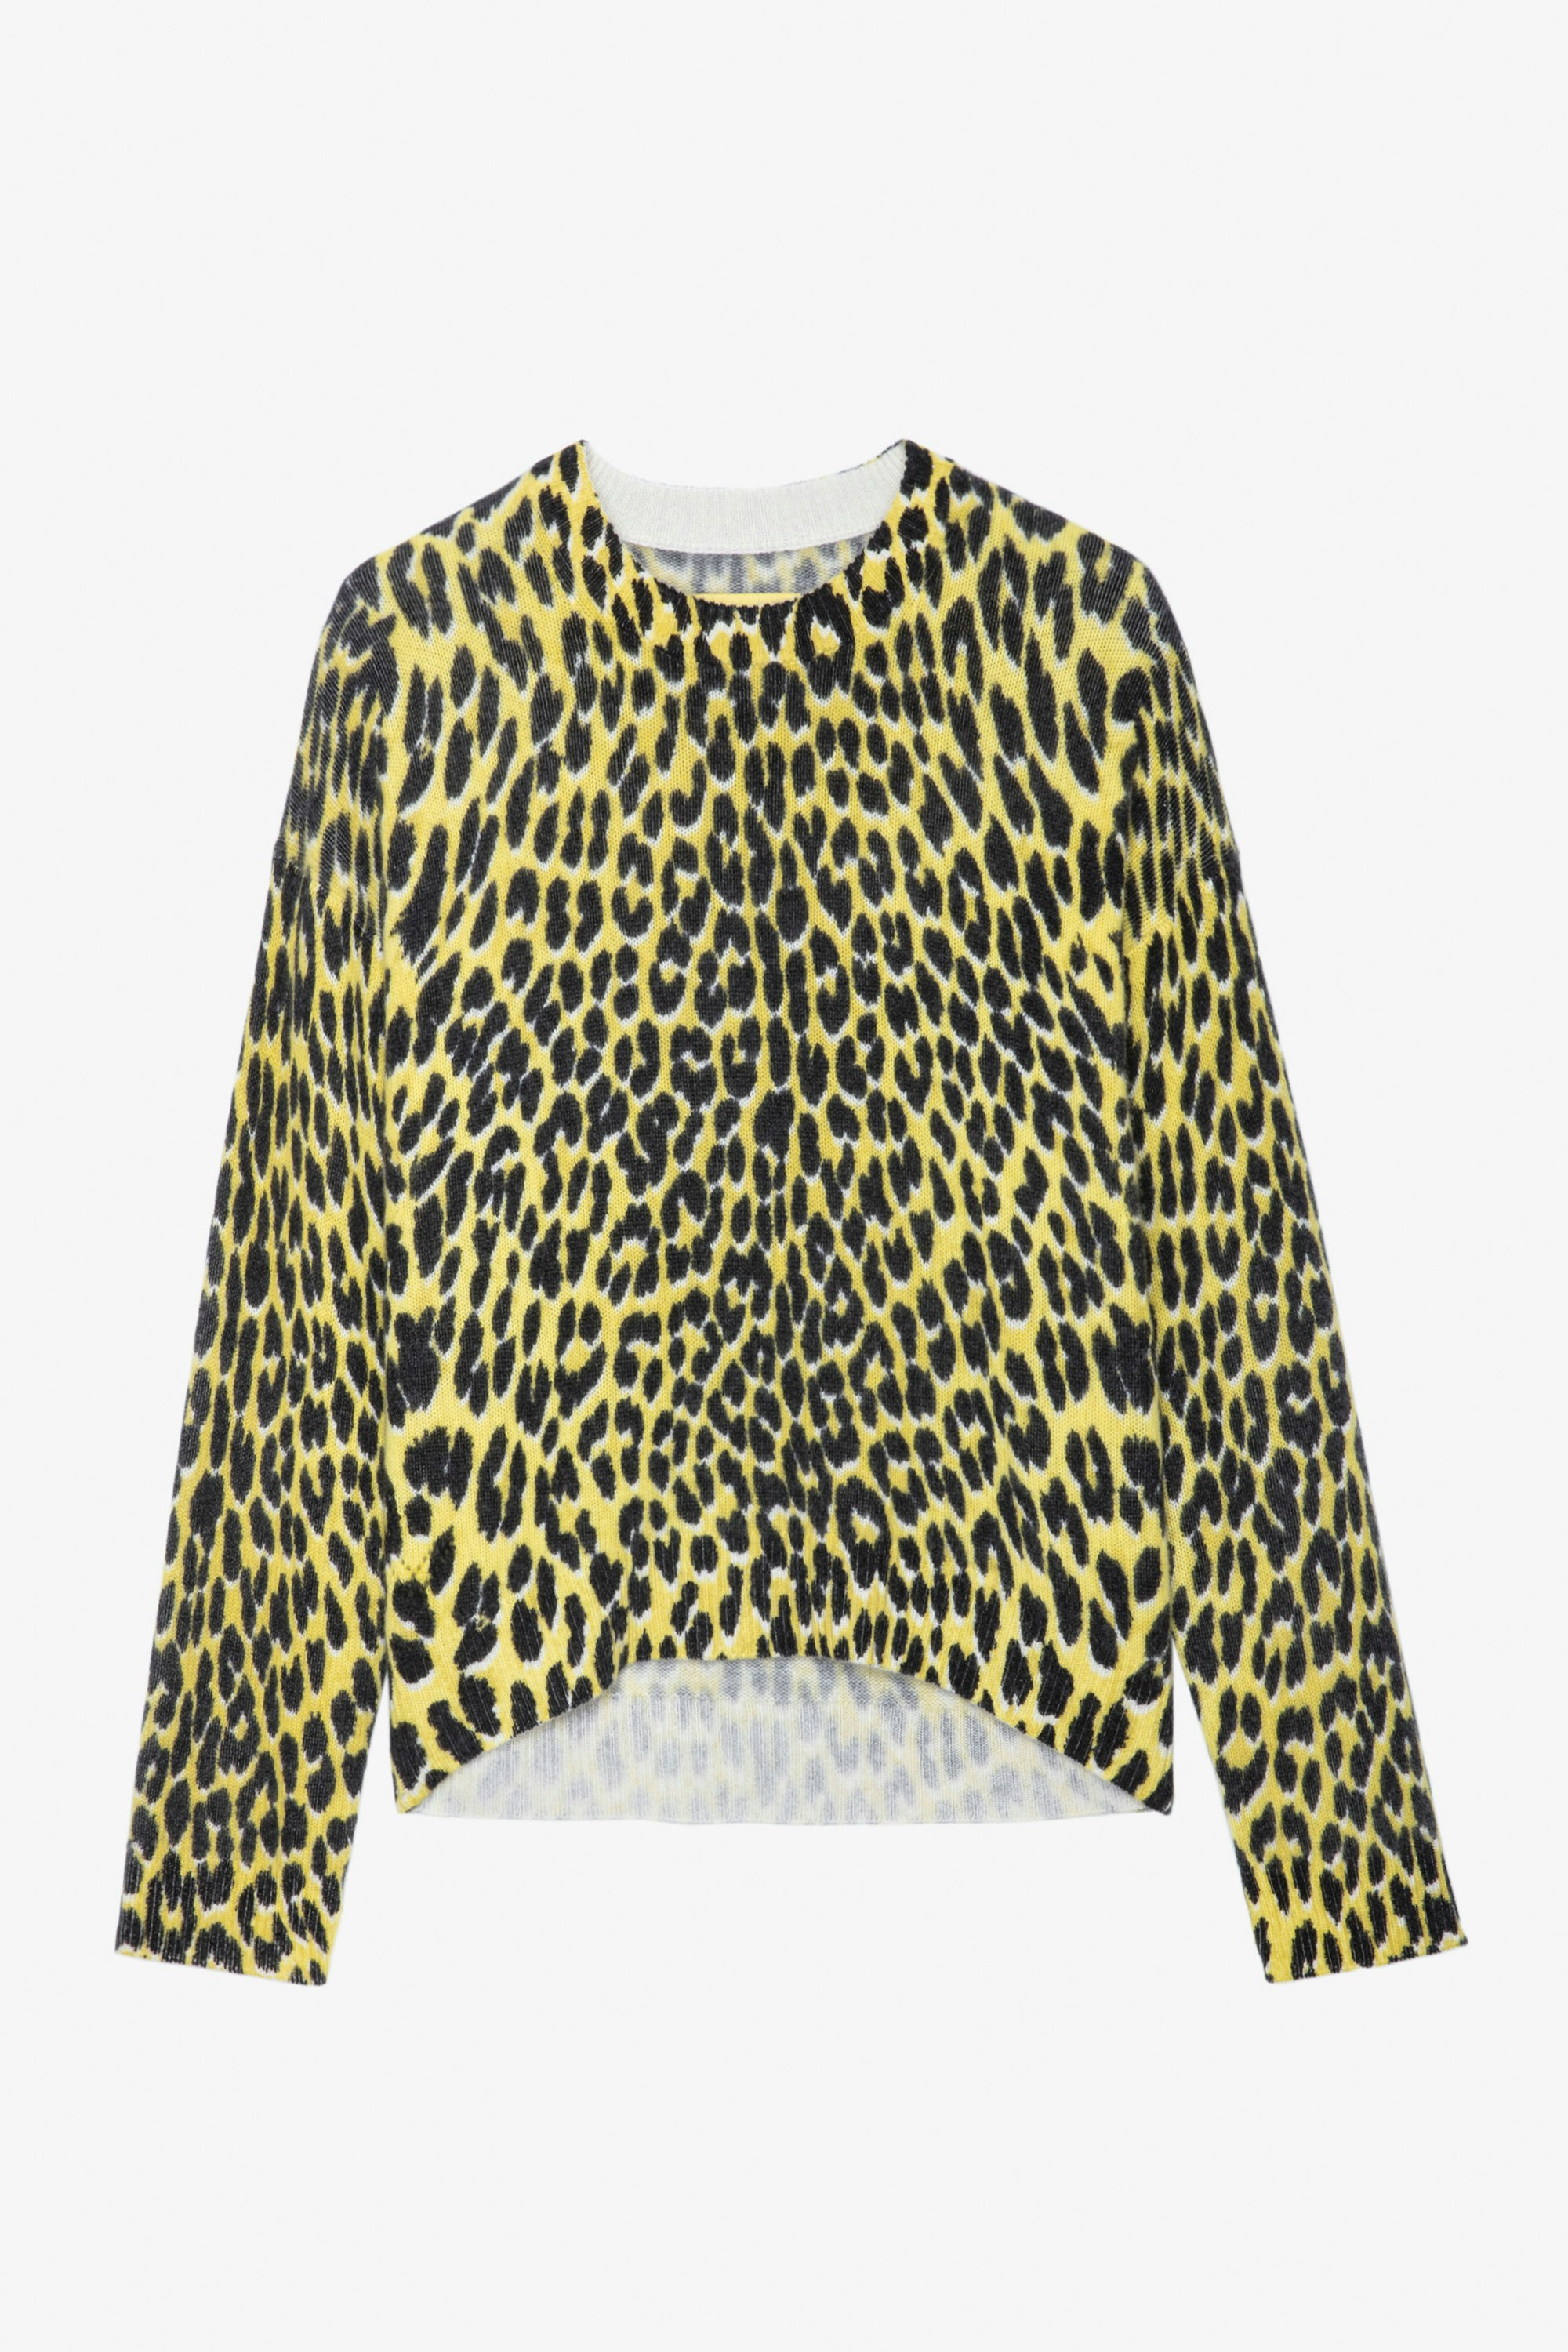 Jersey de cachemira con efecto leopardo Markus - Jersey amarillo de cachemira con estampado de leopardo para mujer.